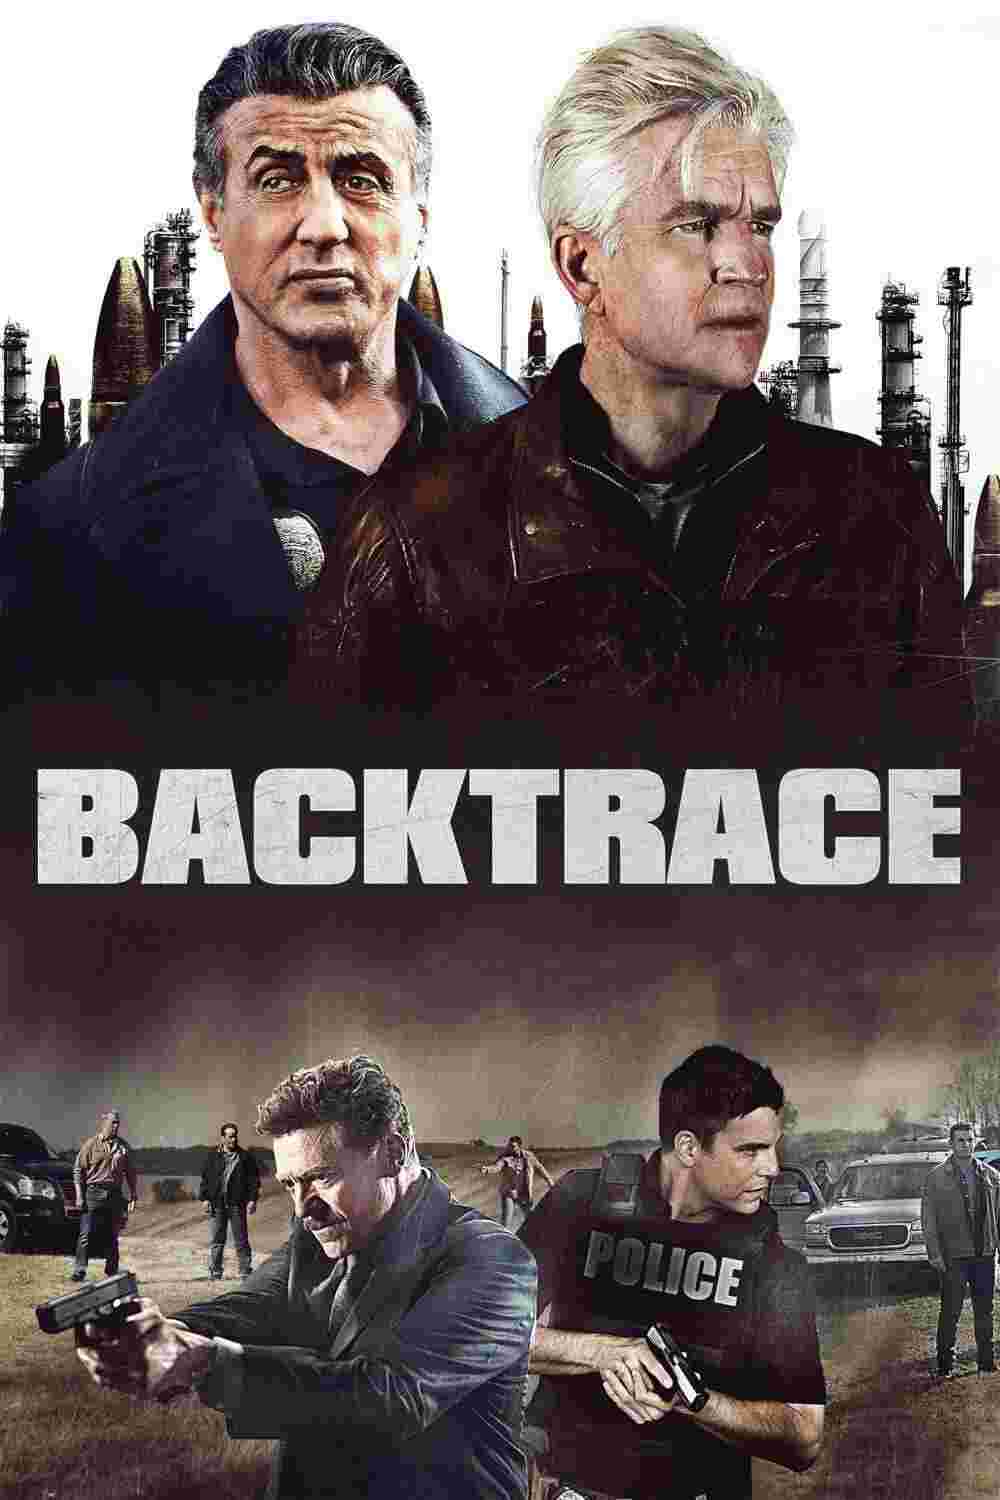 Backtrace (2018) Ryan Guzman